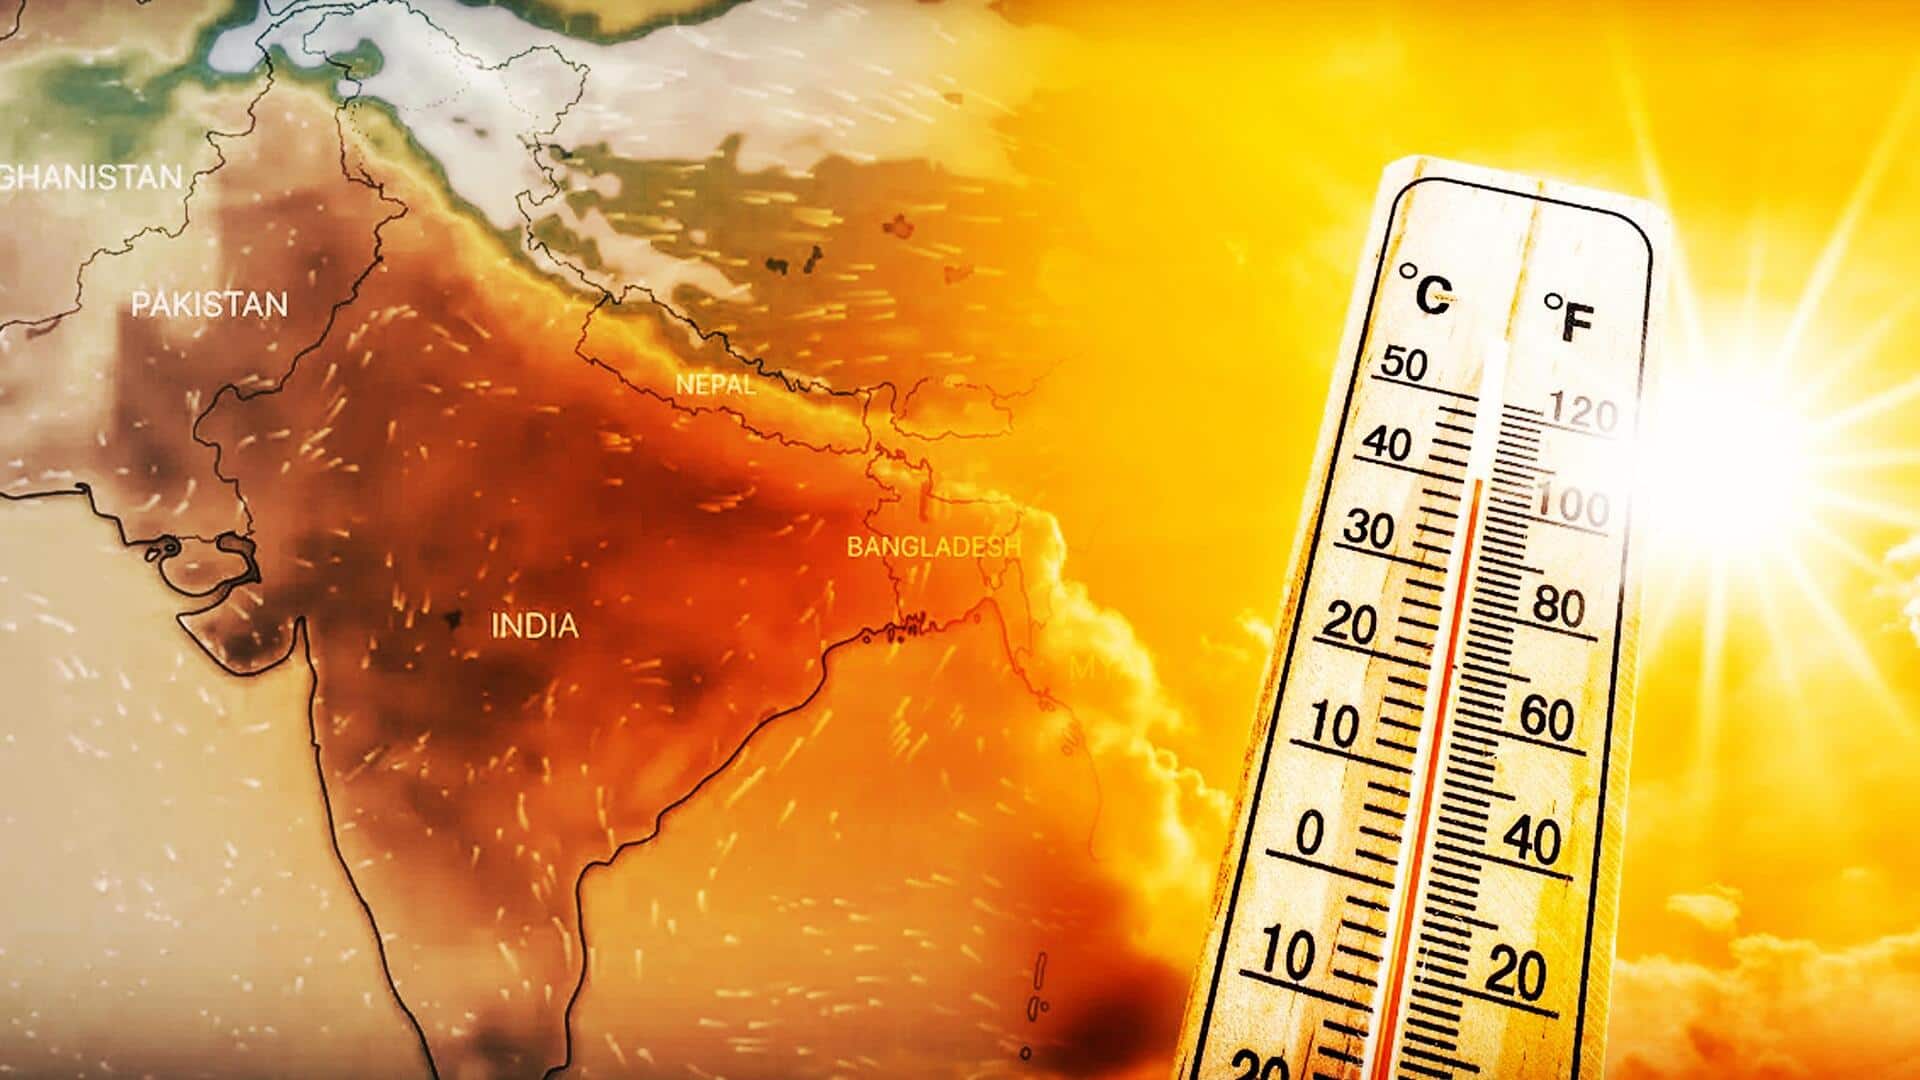 उत्तर भारत भीषण गर्मी की चपेट में, जानिए कब तक मिलेगी राहत